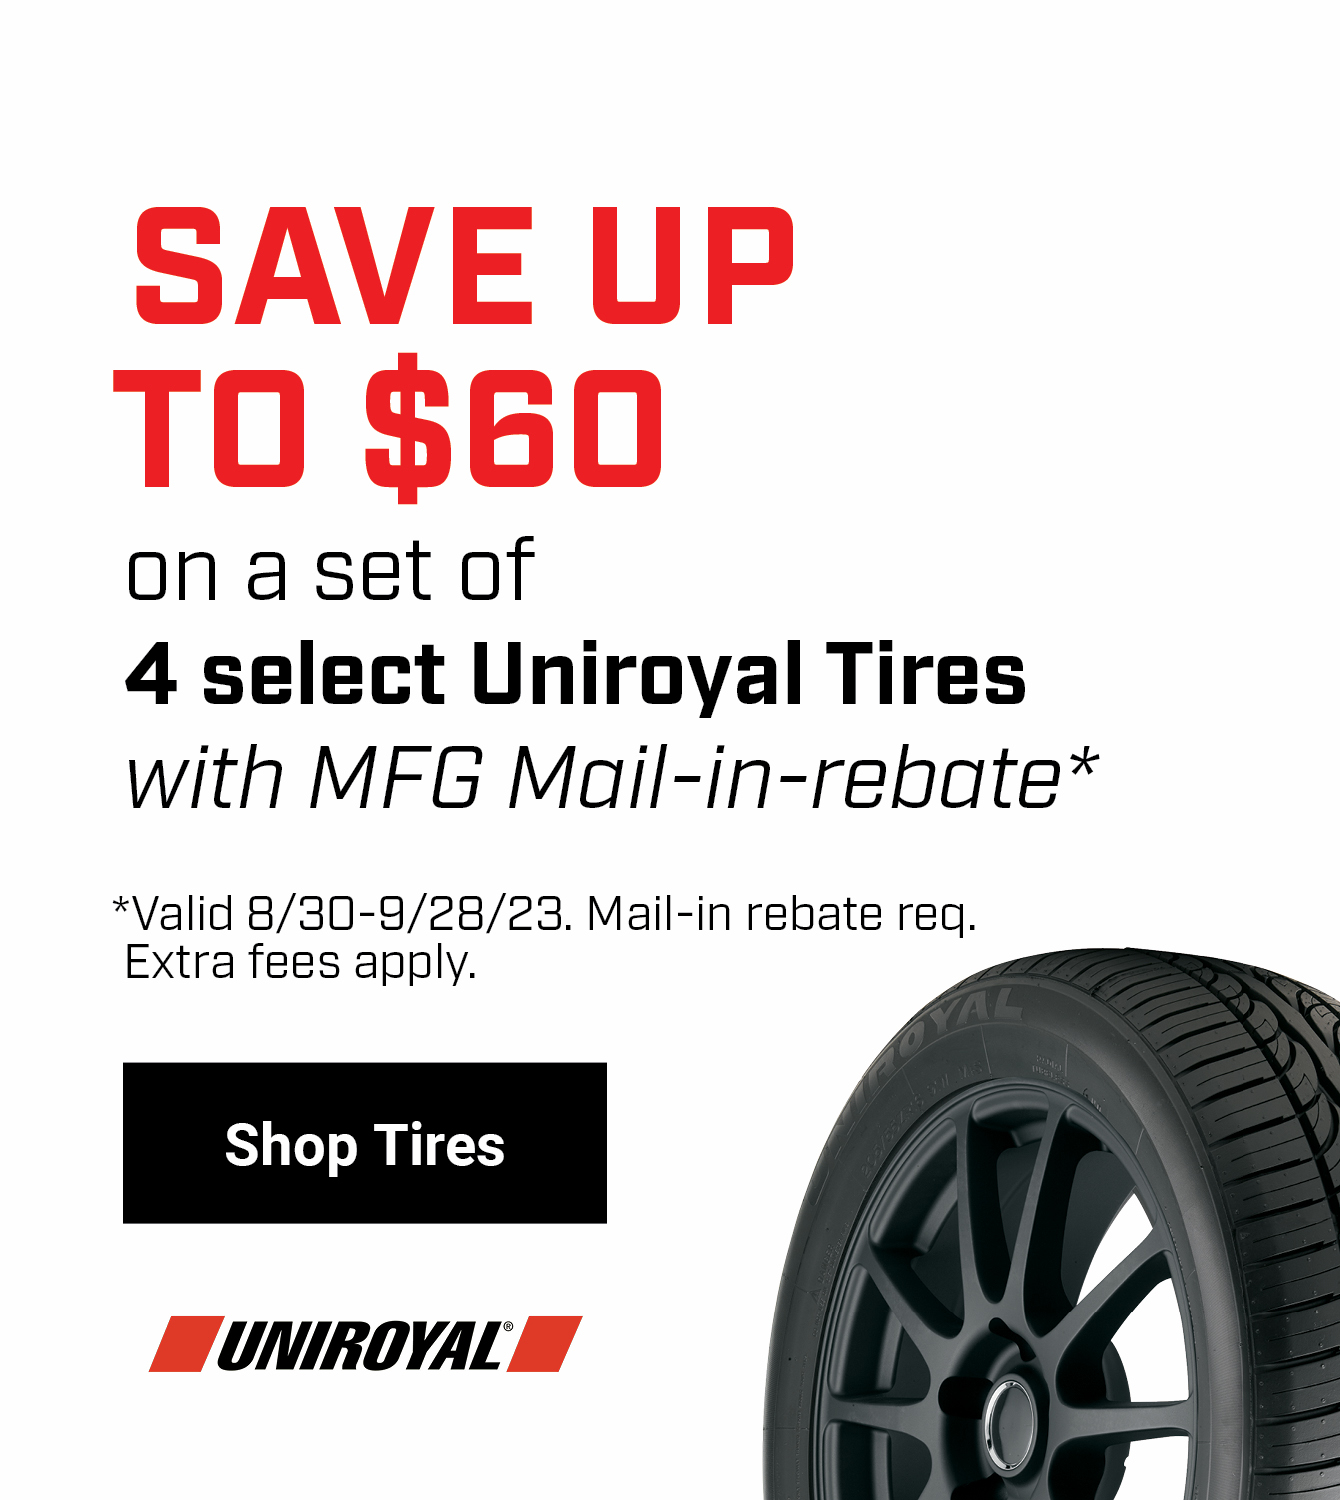 Save on Uniroyal Tires